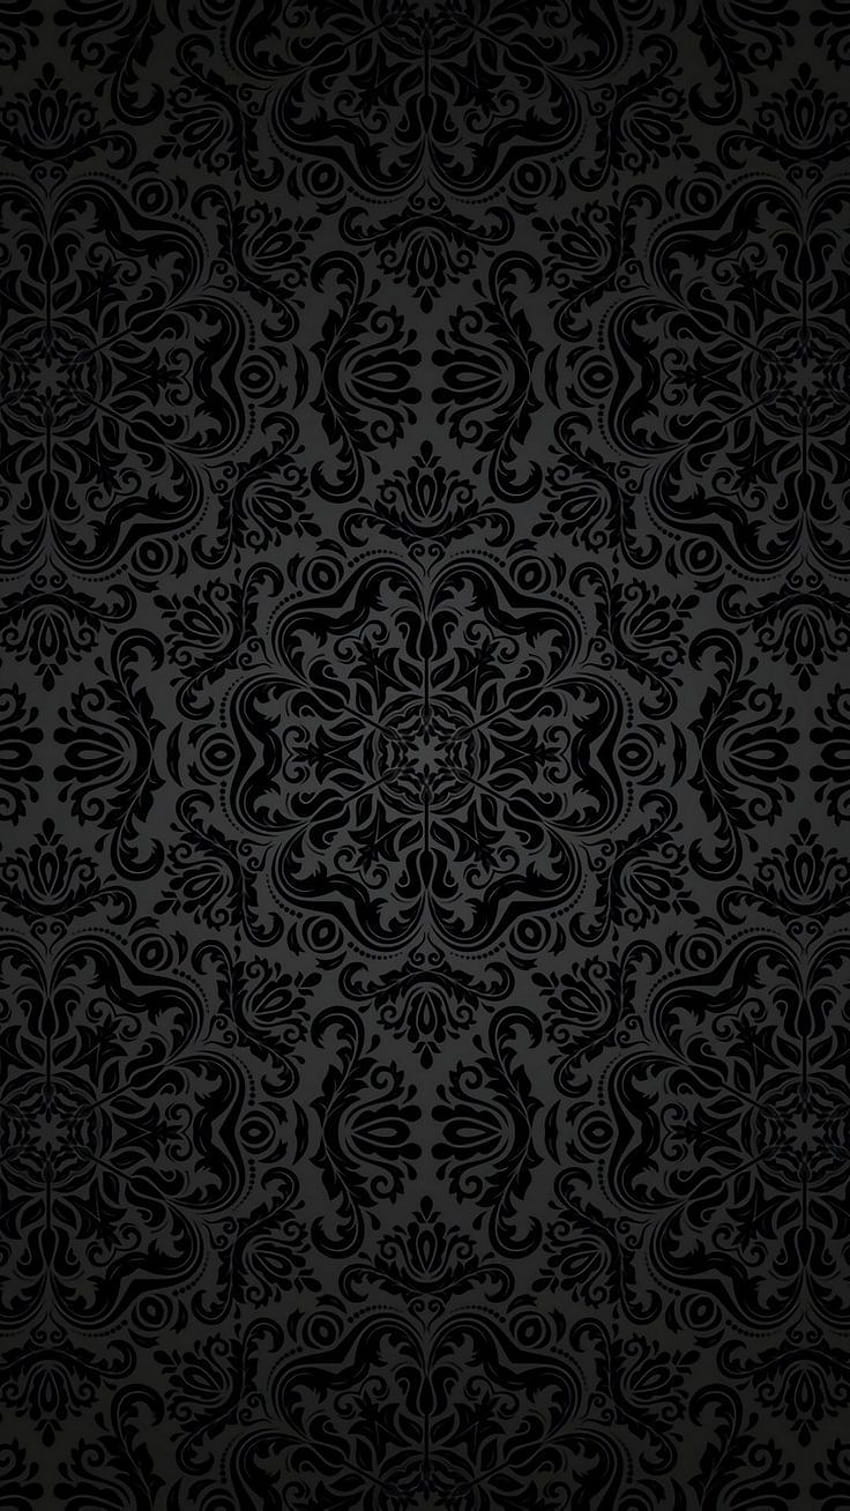 パターン ブラック ブラウン デザイン ビジュアル アート iphone HD電話の壁紙